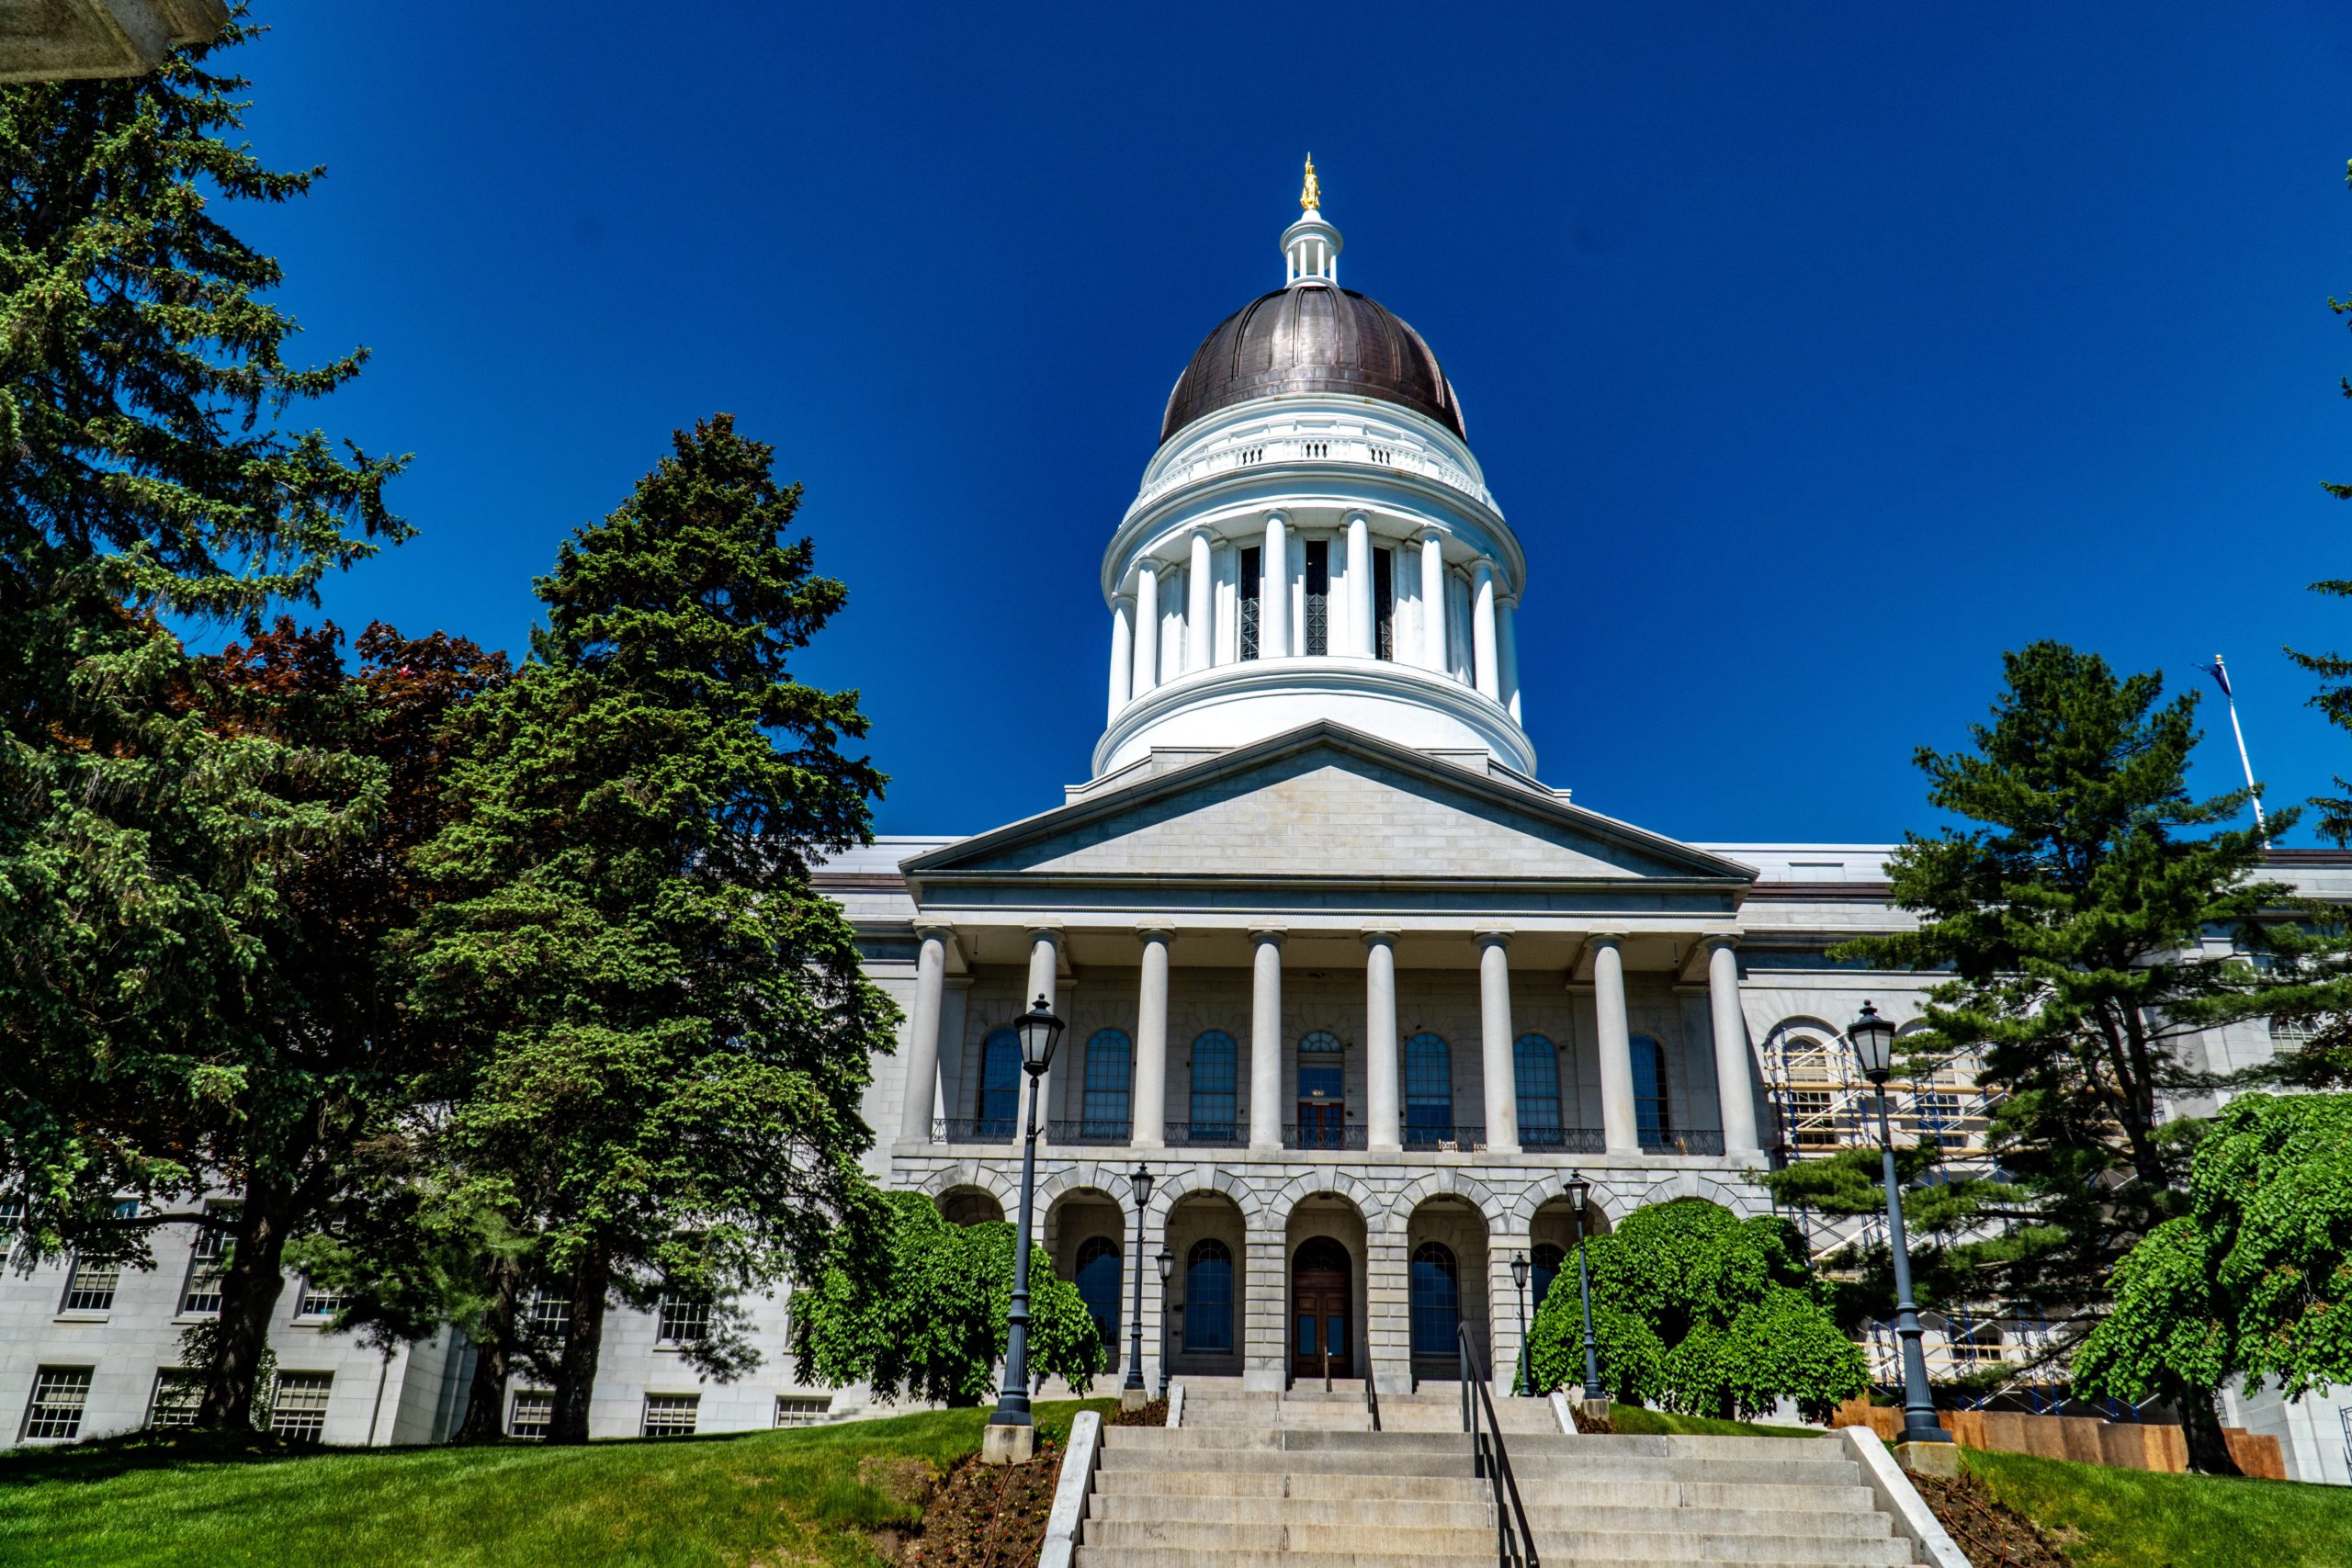 June 9 – Appreciation Day for State Legislators